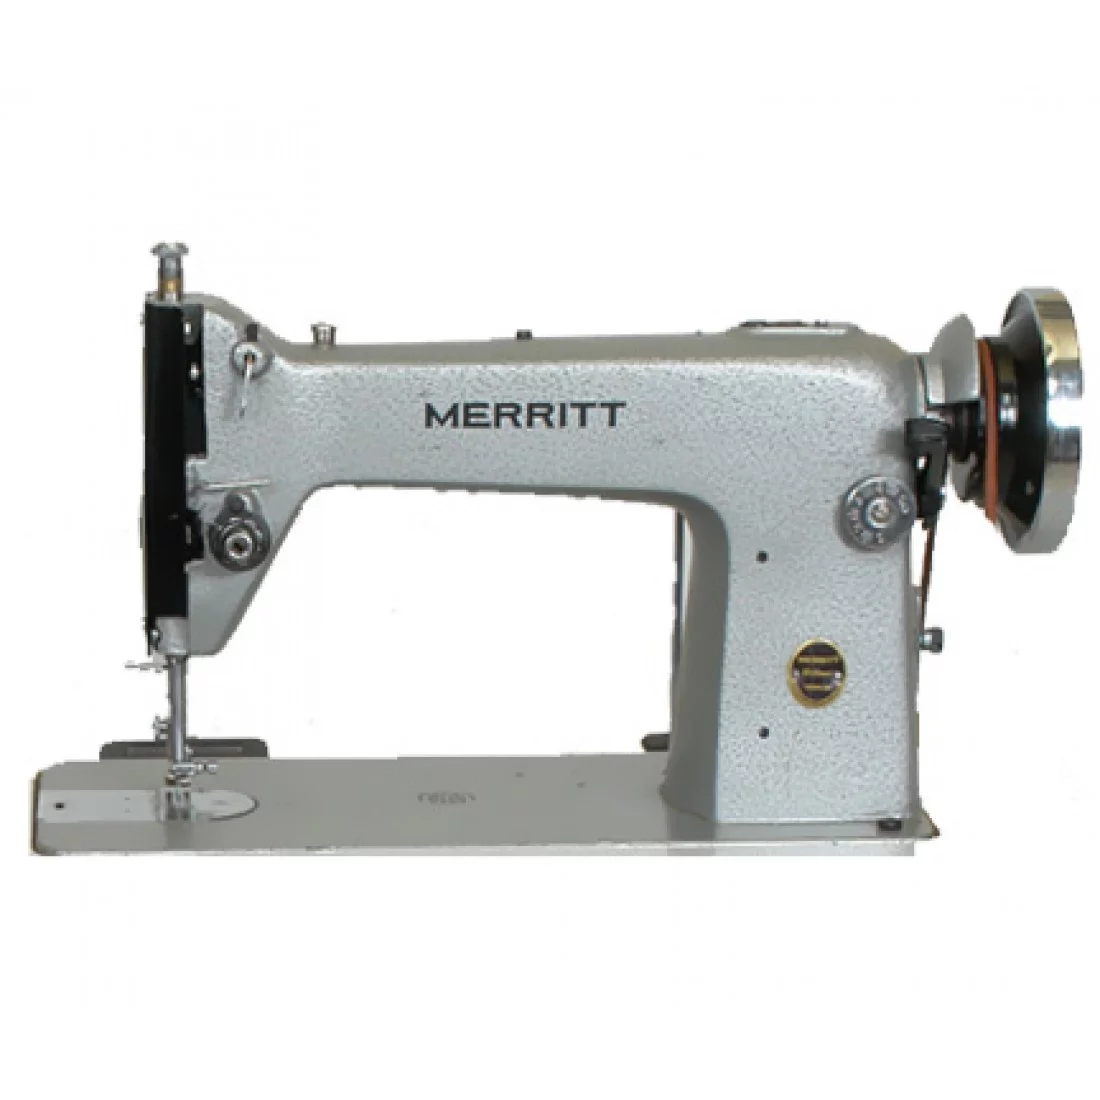 singer merritt sewing machine price